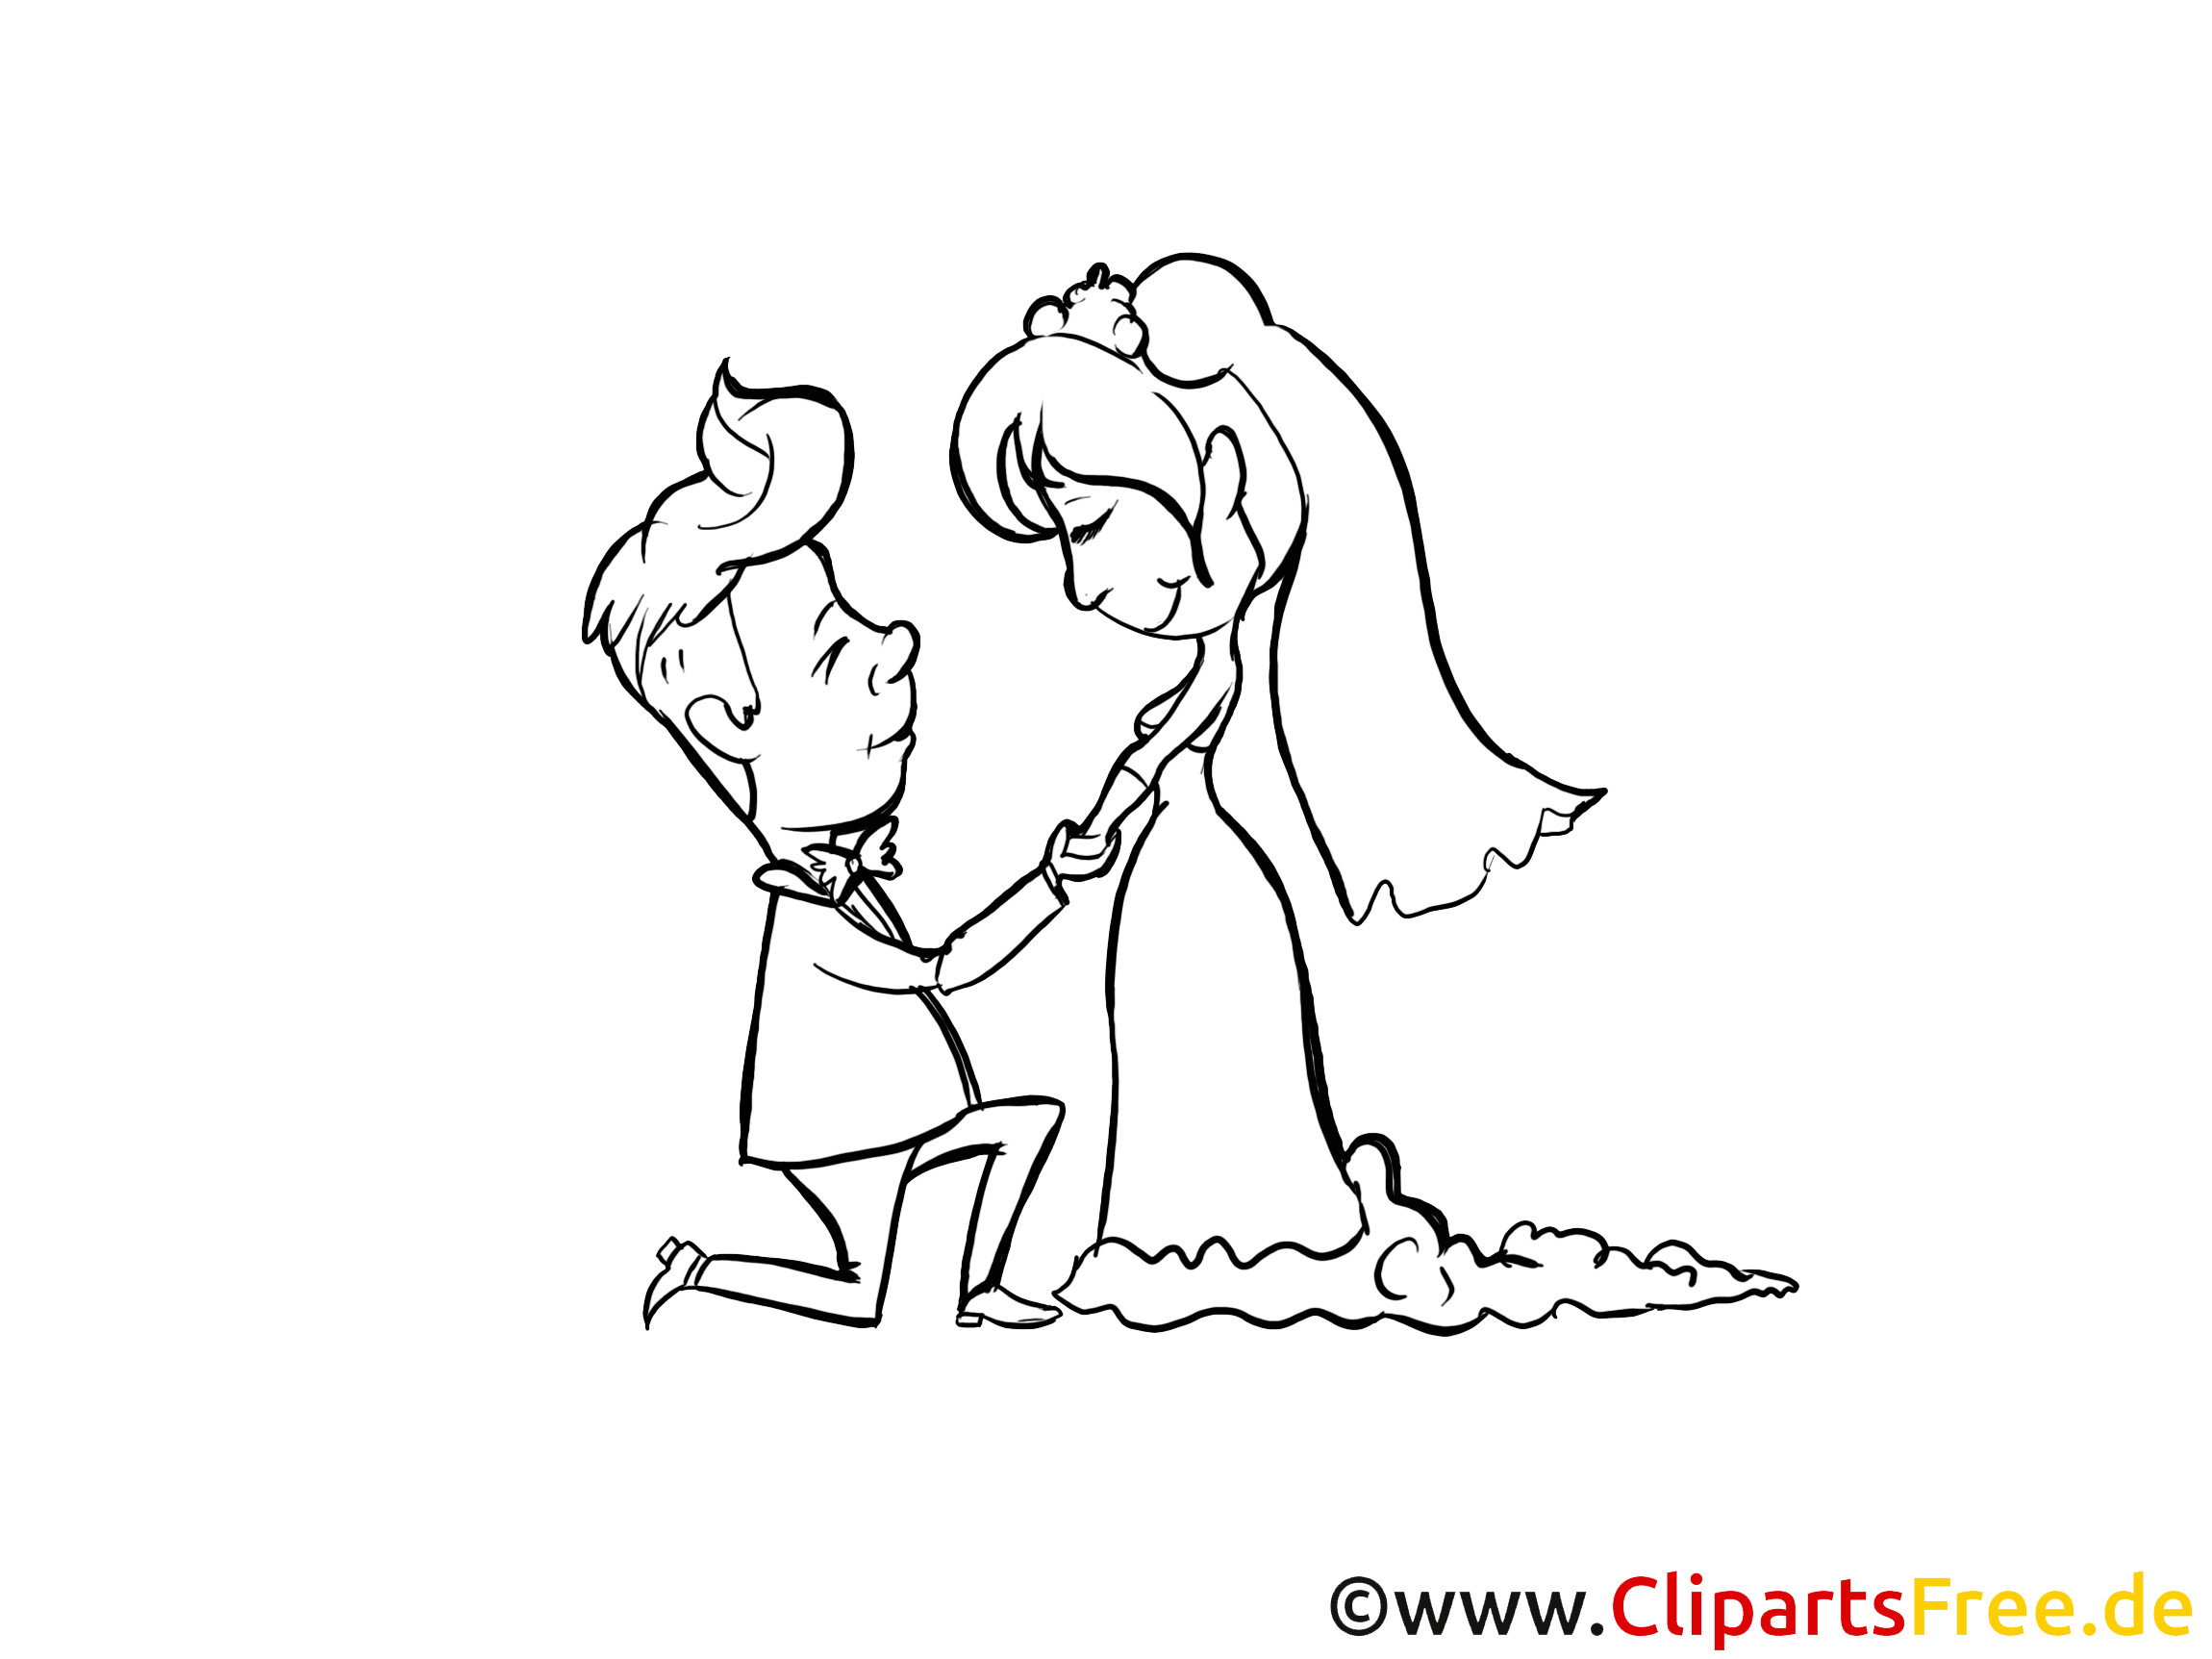 Hochzeit Zeichnung
 Schwarz weisse Zeichnung zur Hochzeit Brautpaar